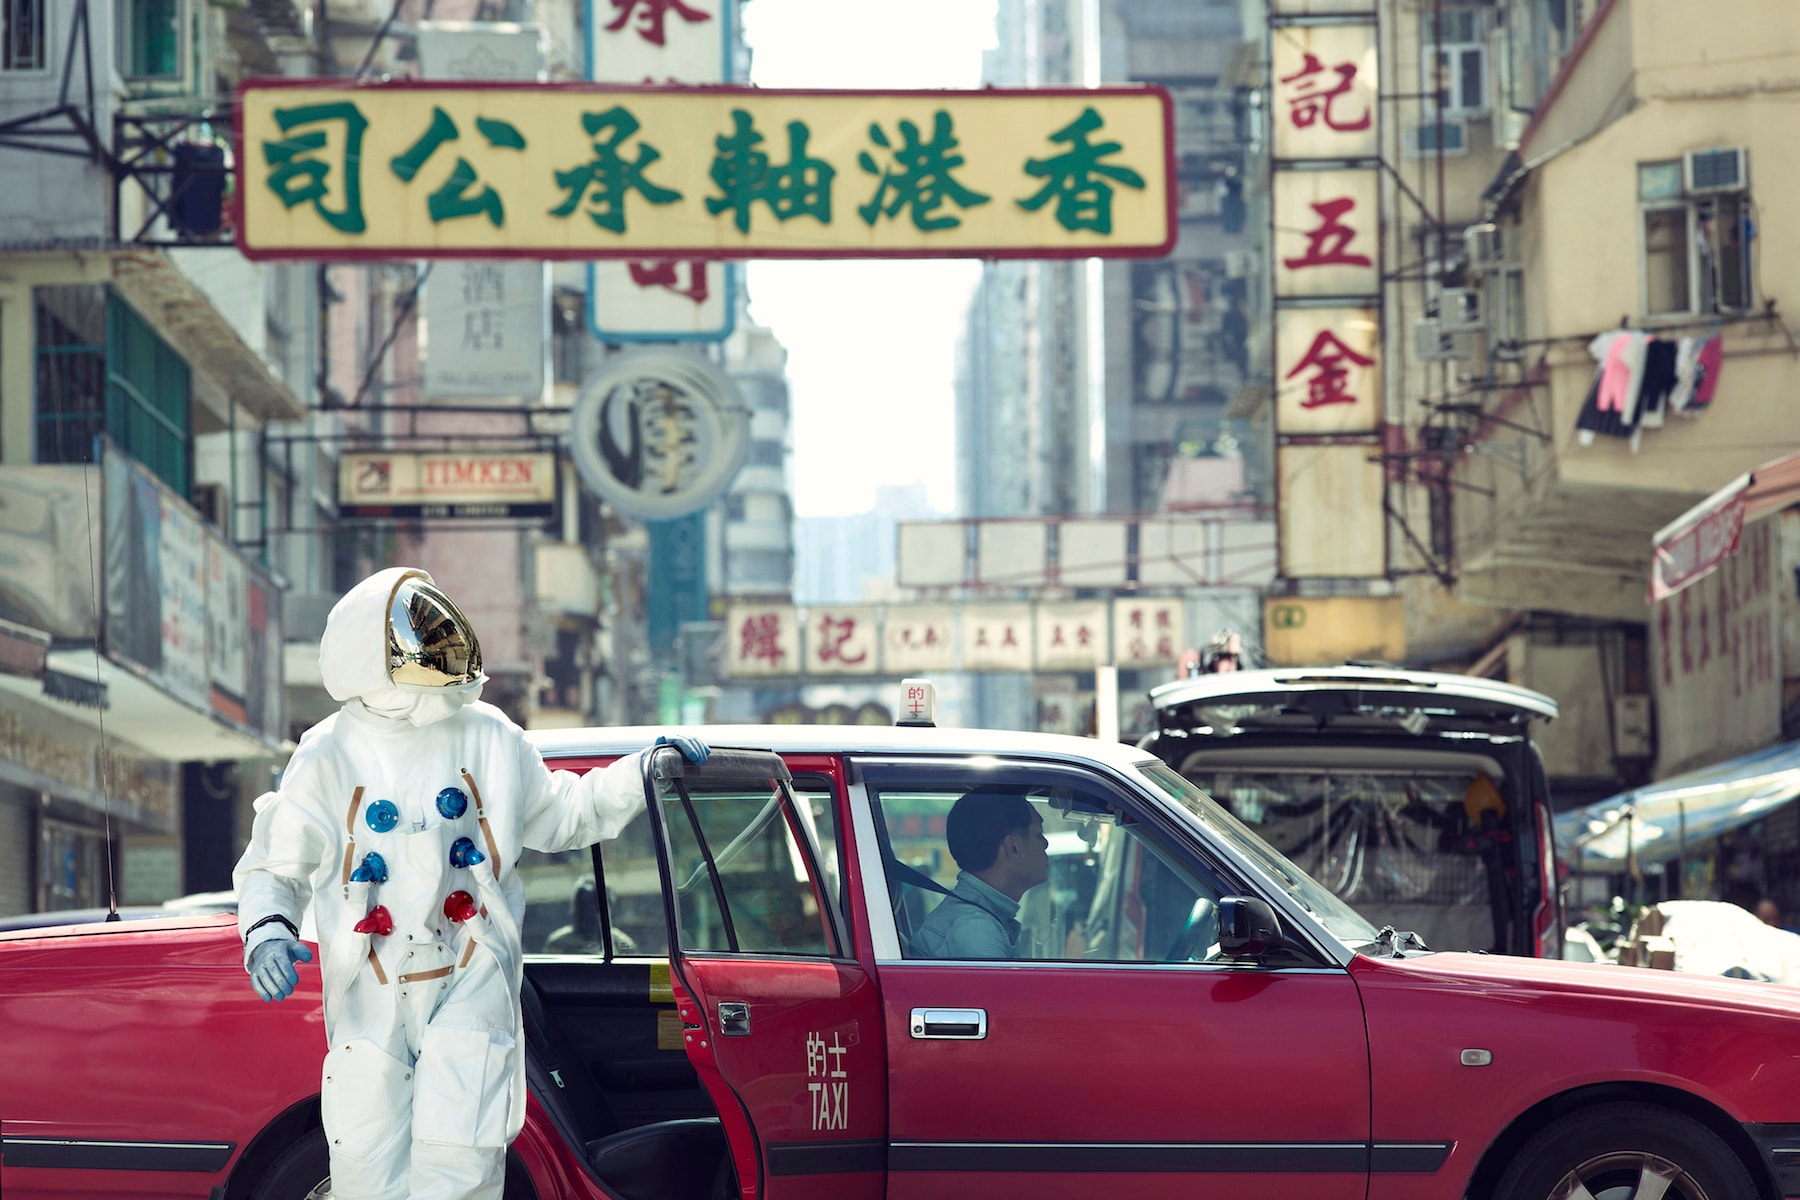 OMEGA Speedmaster 60 週年香港展覽序幕 – 太空人正式登陸香港